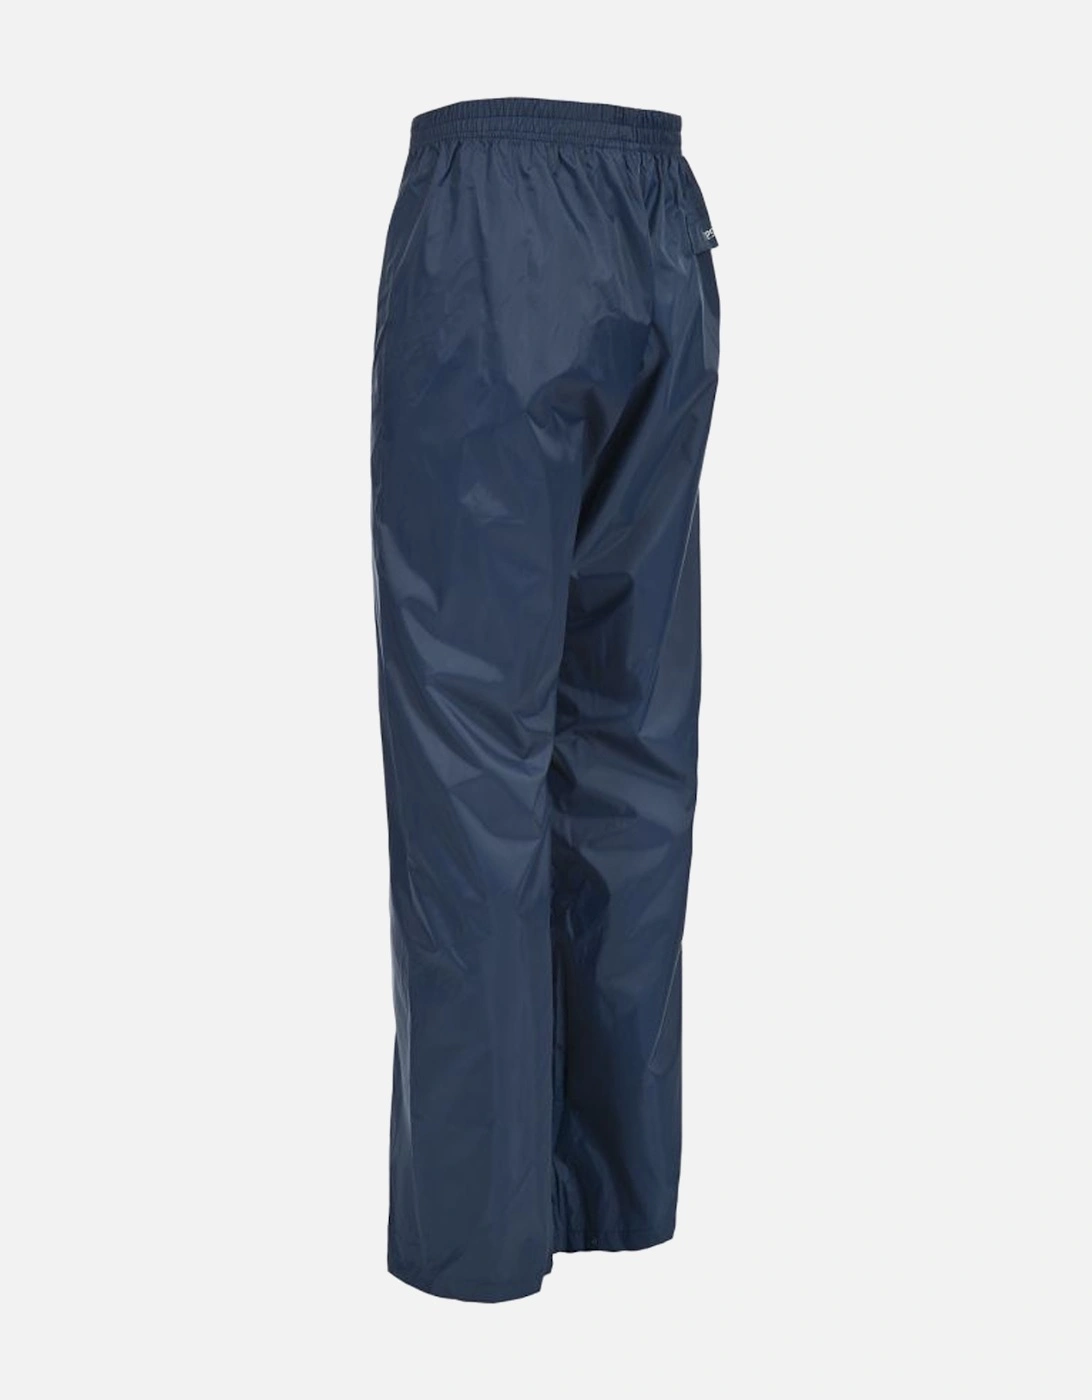 Adults Unisex Packup Trouser Waterproof Packaway Trousers